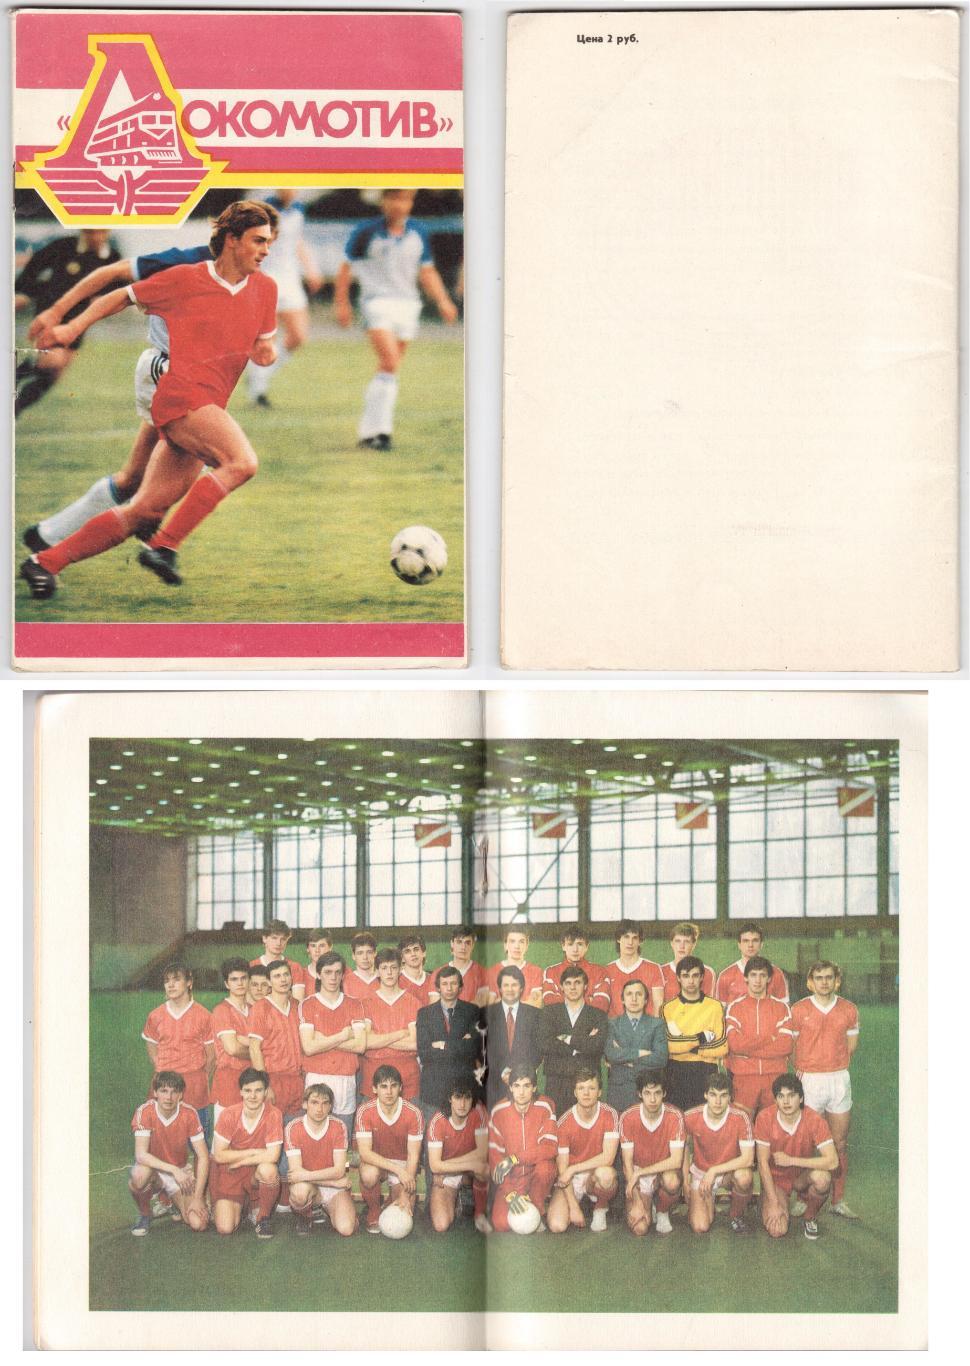 Программка 1989 Локомотив (Москва), Программка к сезону 1989 52-й Чемпионат СССР